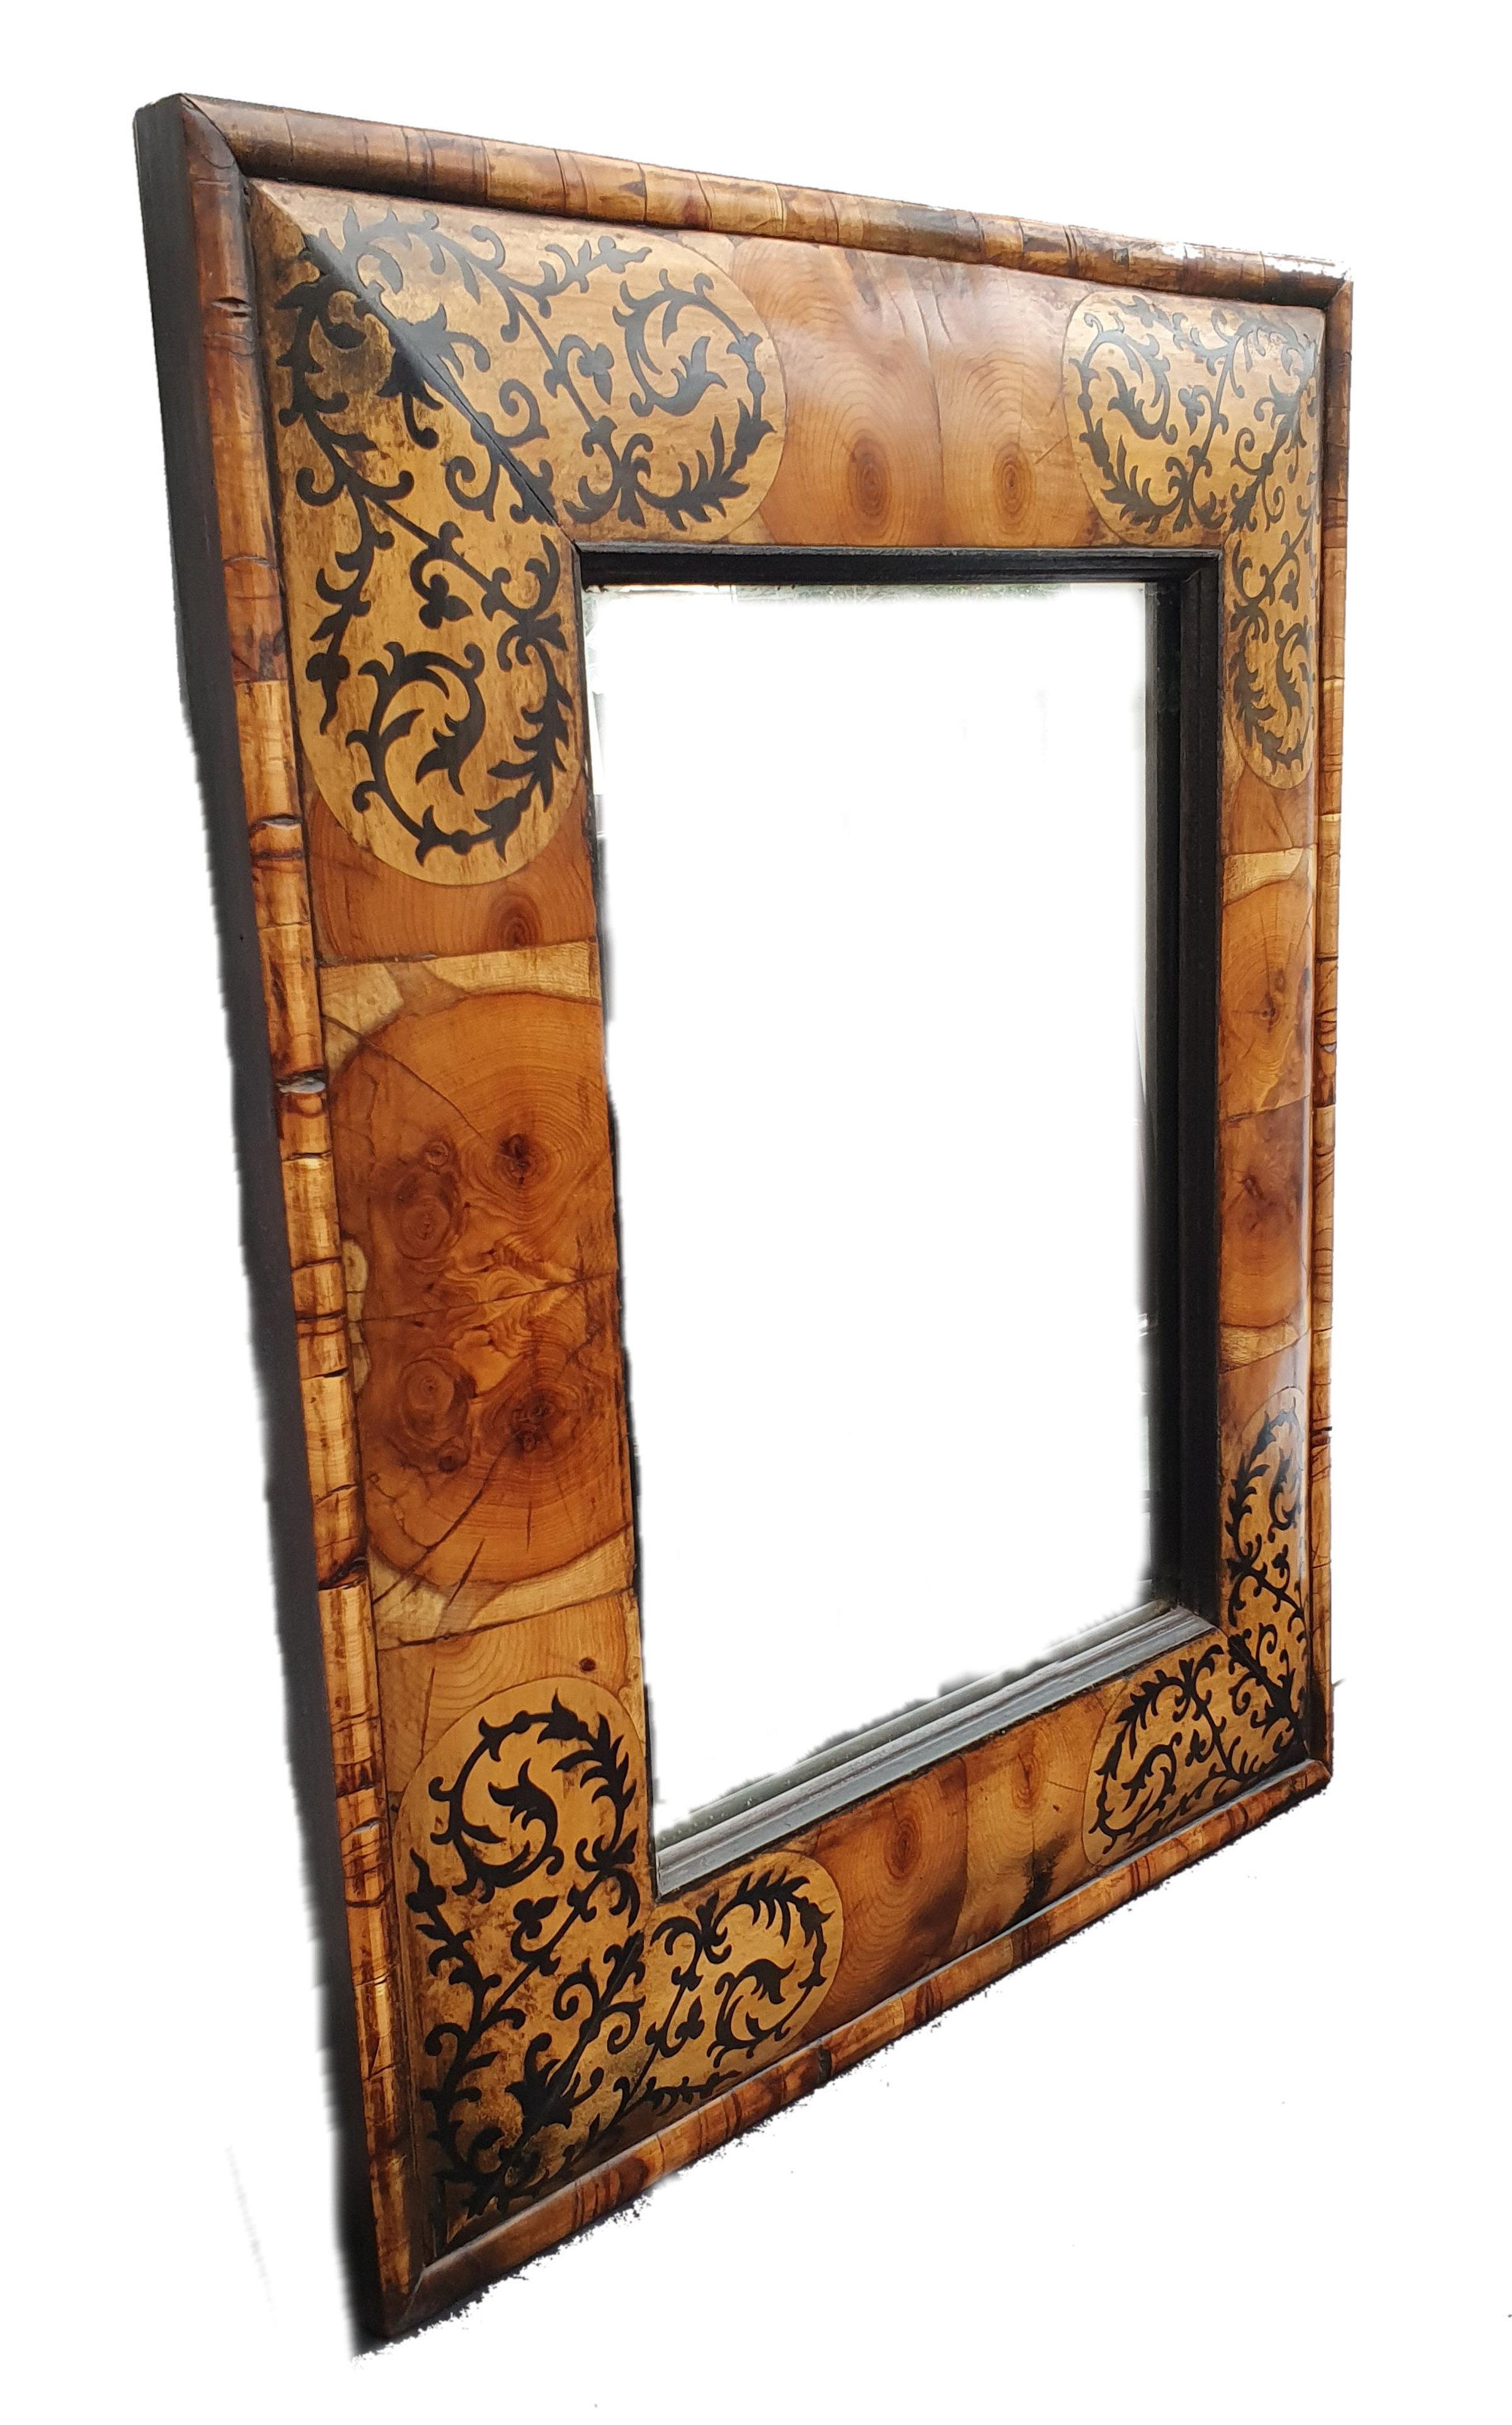 Ce magnifique miroir à coussin en marqueterie présente un design complexe de motifs incrustés. Il s'agit d'un miroir de style William and Mary du XVIIe siècle, avec un design original et une marqueterie découpée à la main avec un placage d'ifs et